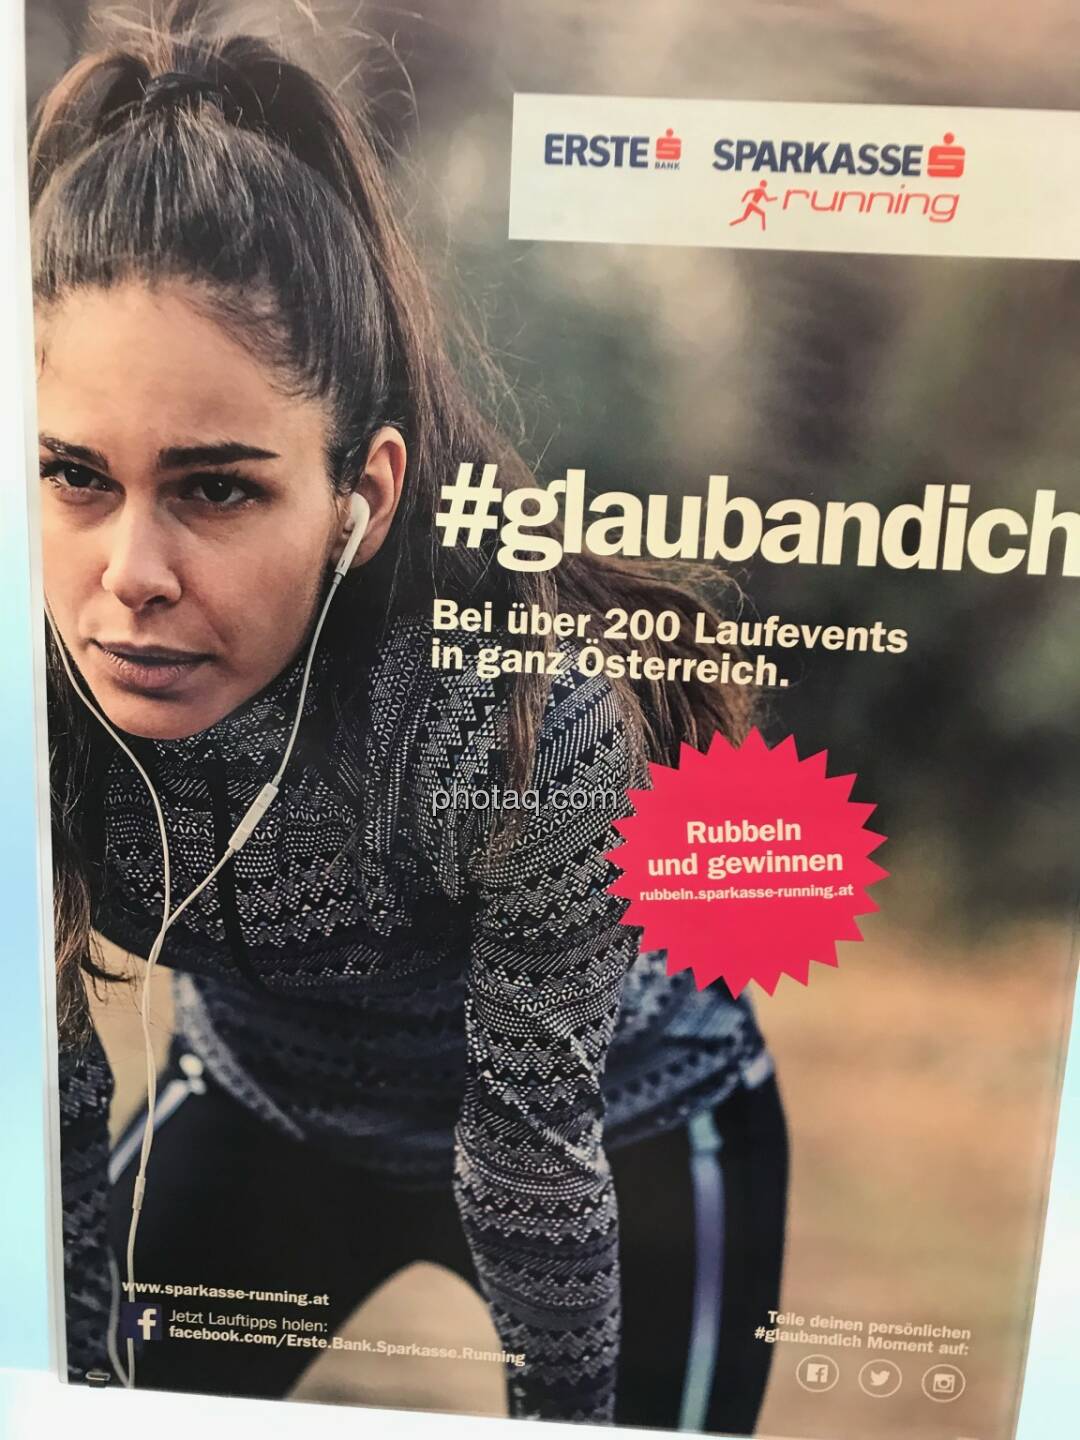 Erste s running - #glaubandich - Bei über 200 Laufevents in ganz Österreich